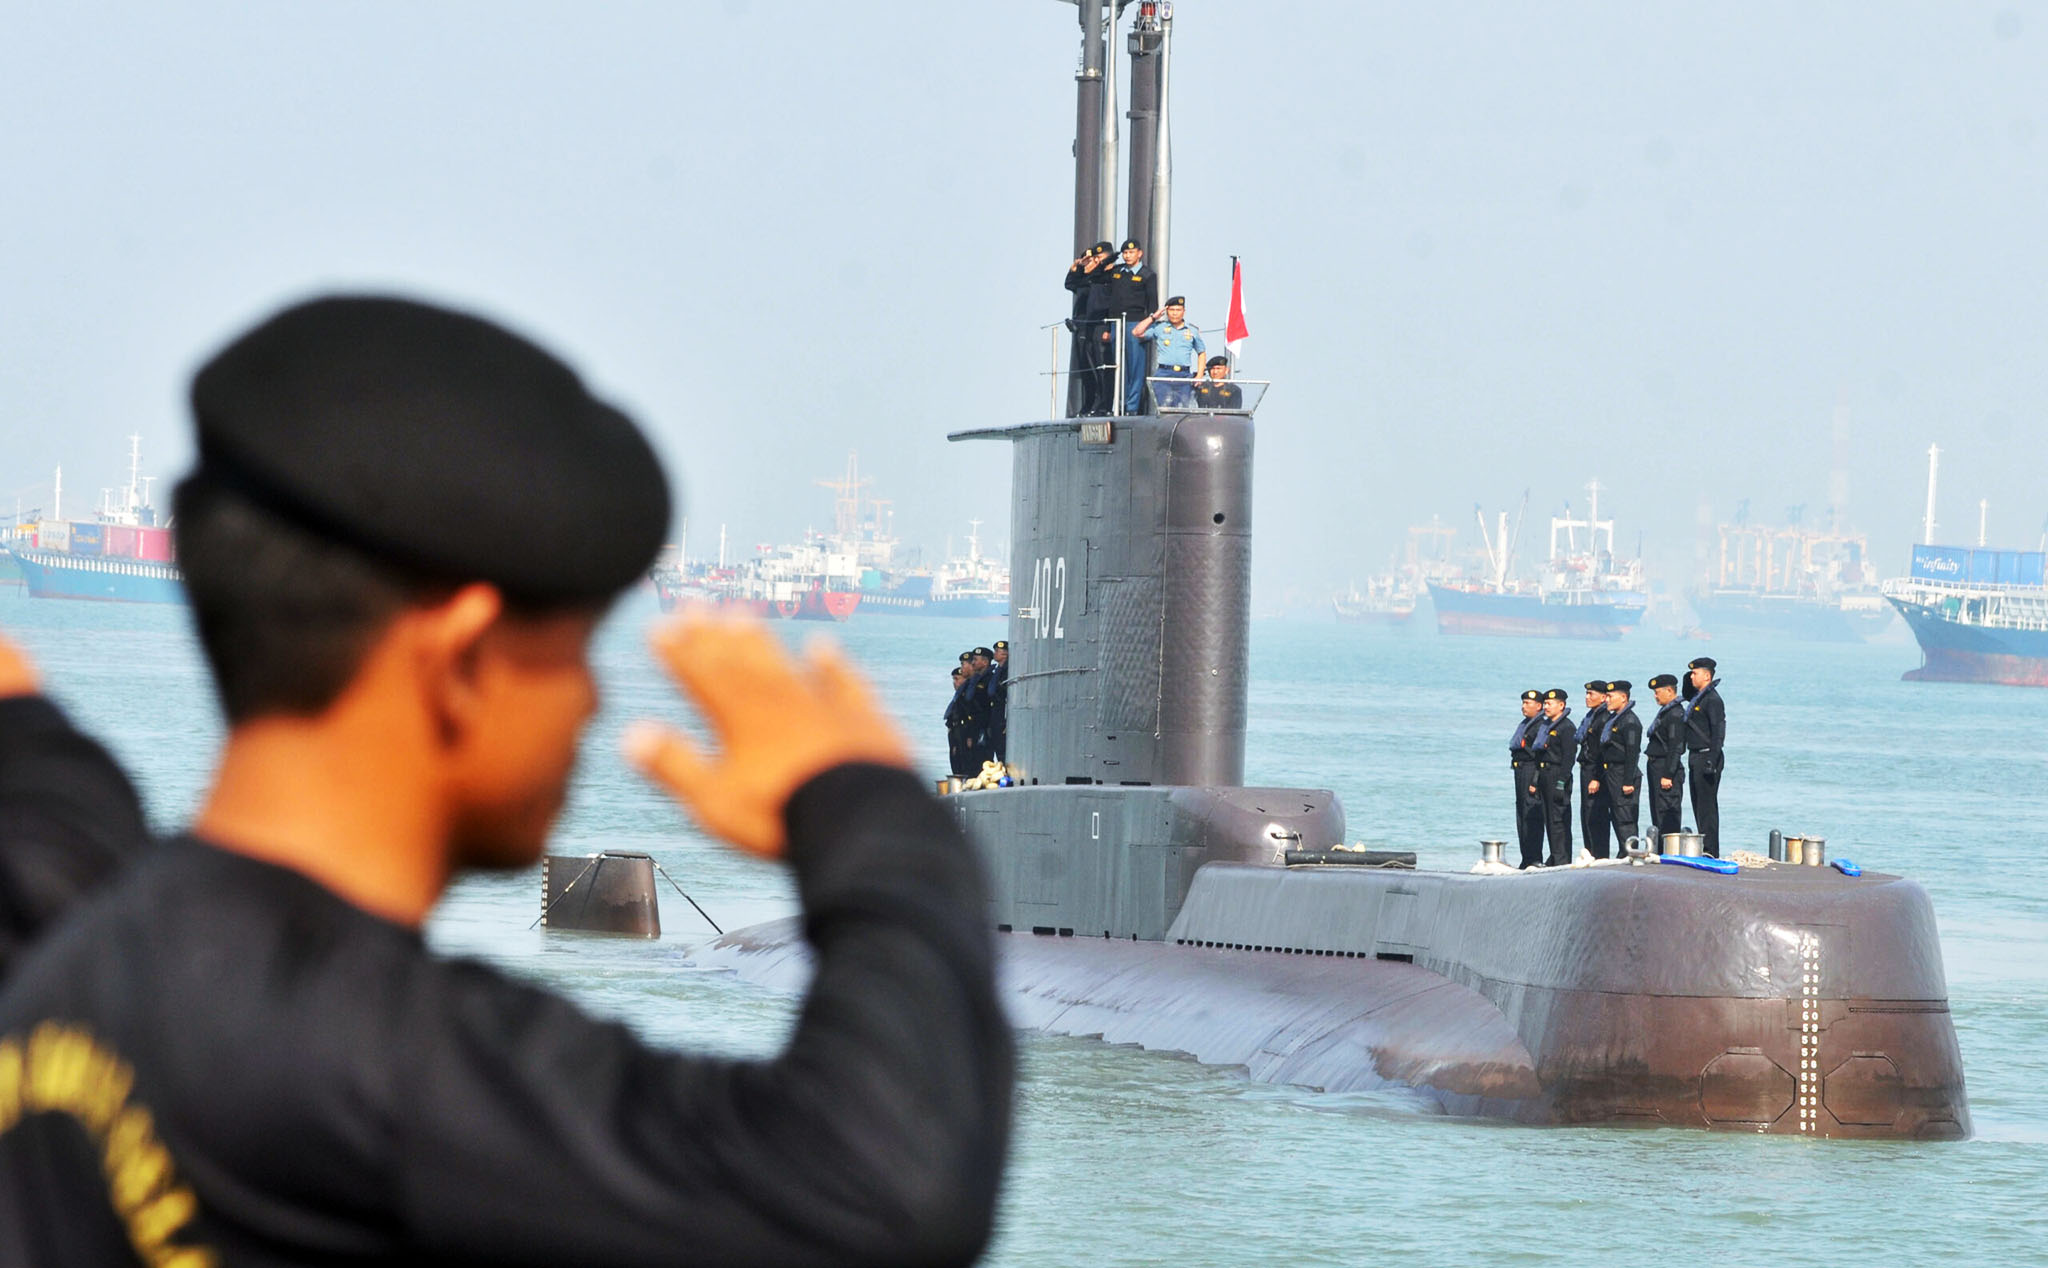 Tàu ngầm Indonesia có thể chìm ở độ sâu 700 m, thảm họa tàu San Juan liệu có lặp lại?